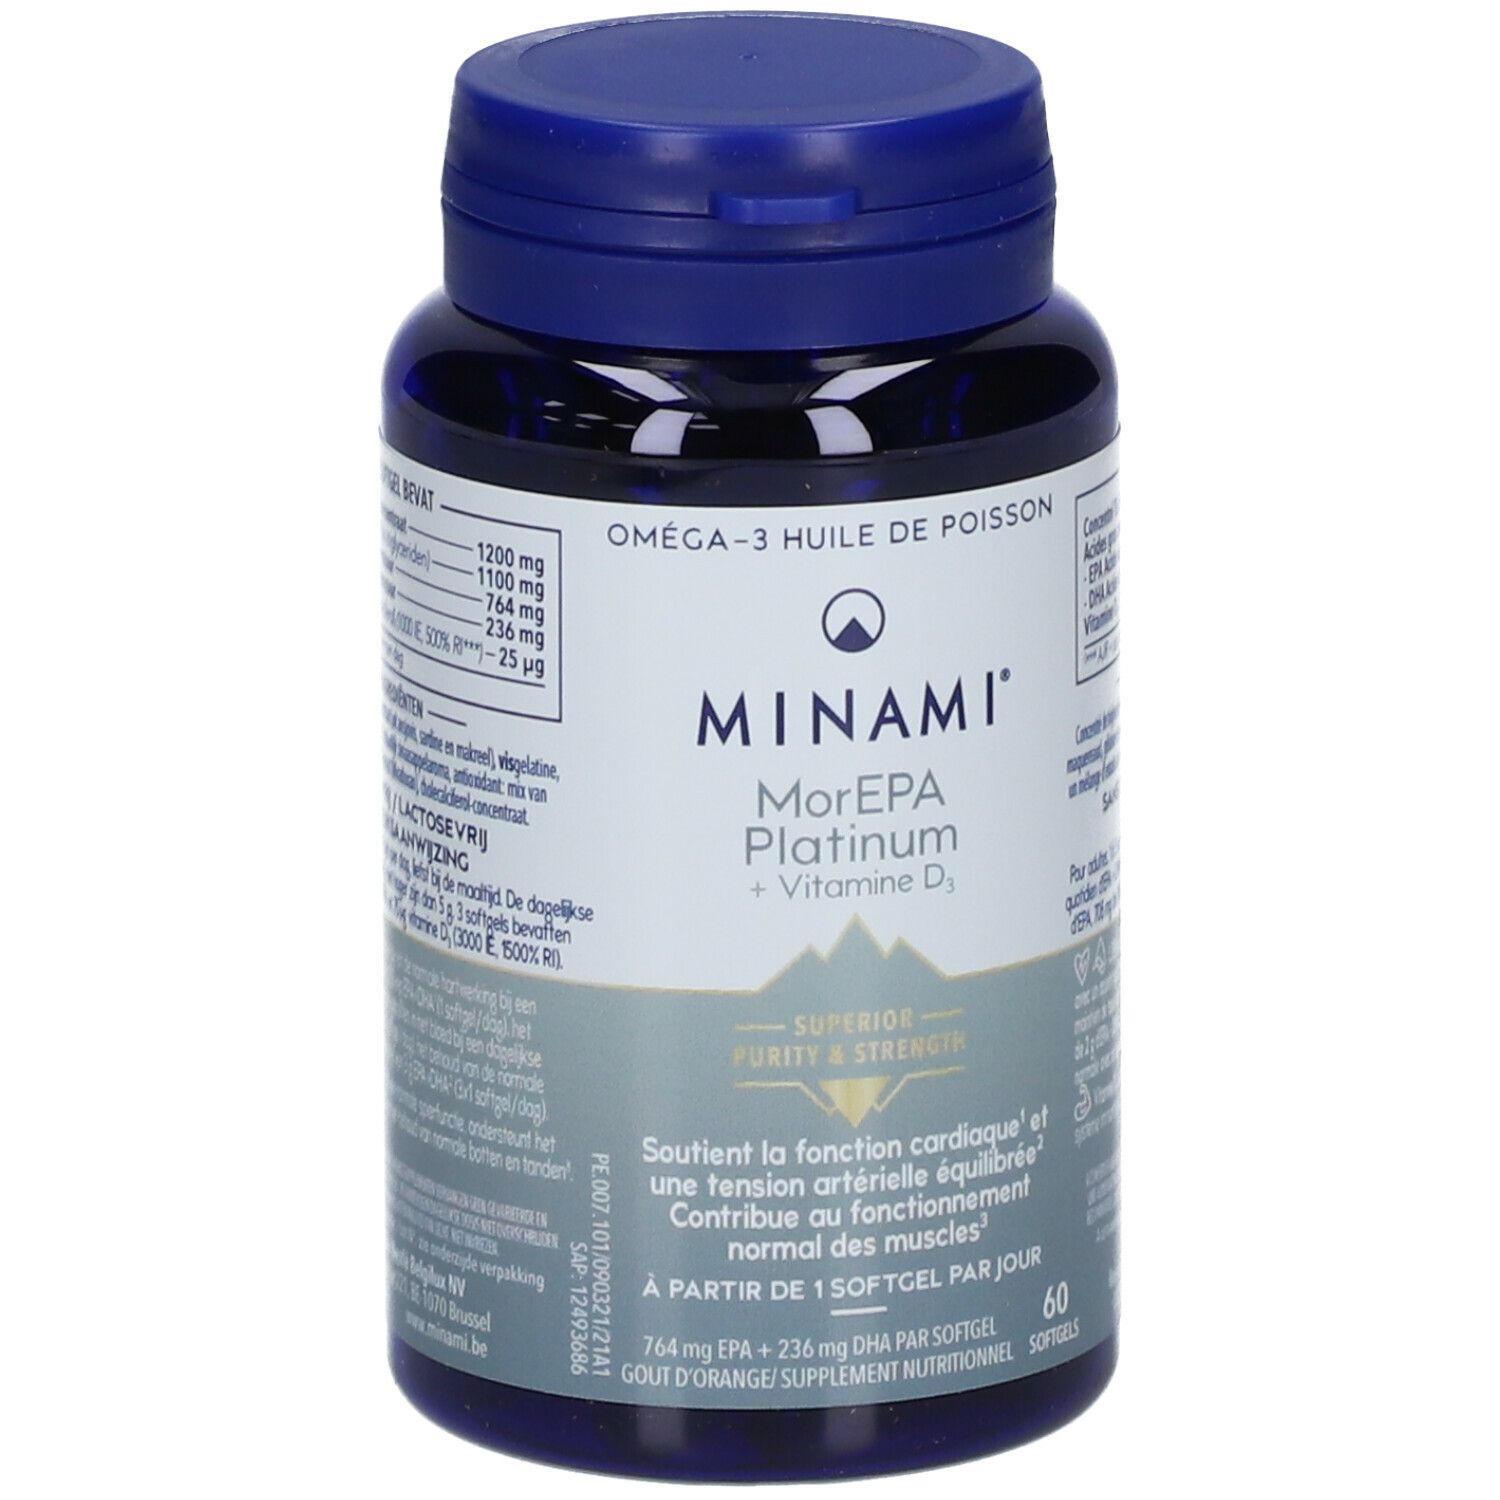 Minami® MorEPA Platinum + Vitamine D3